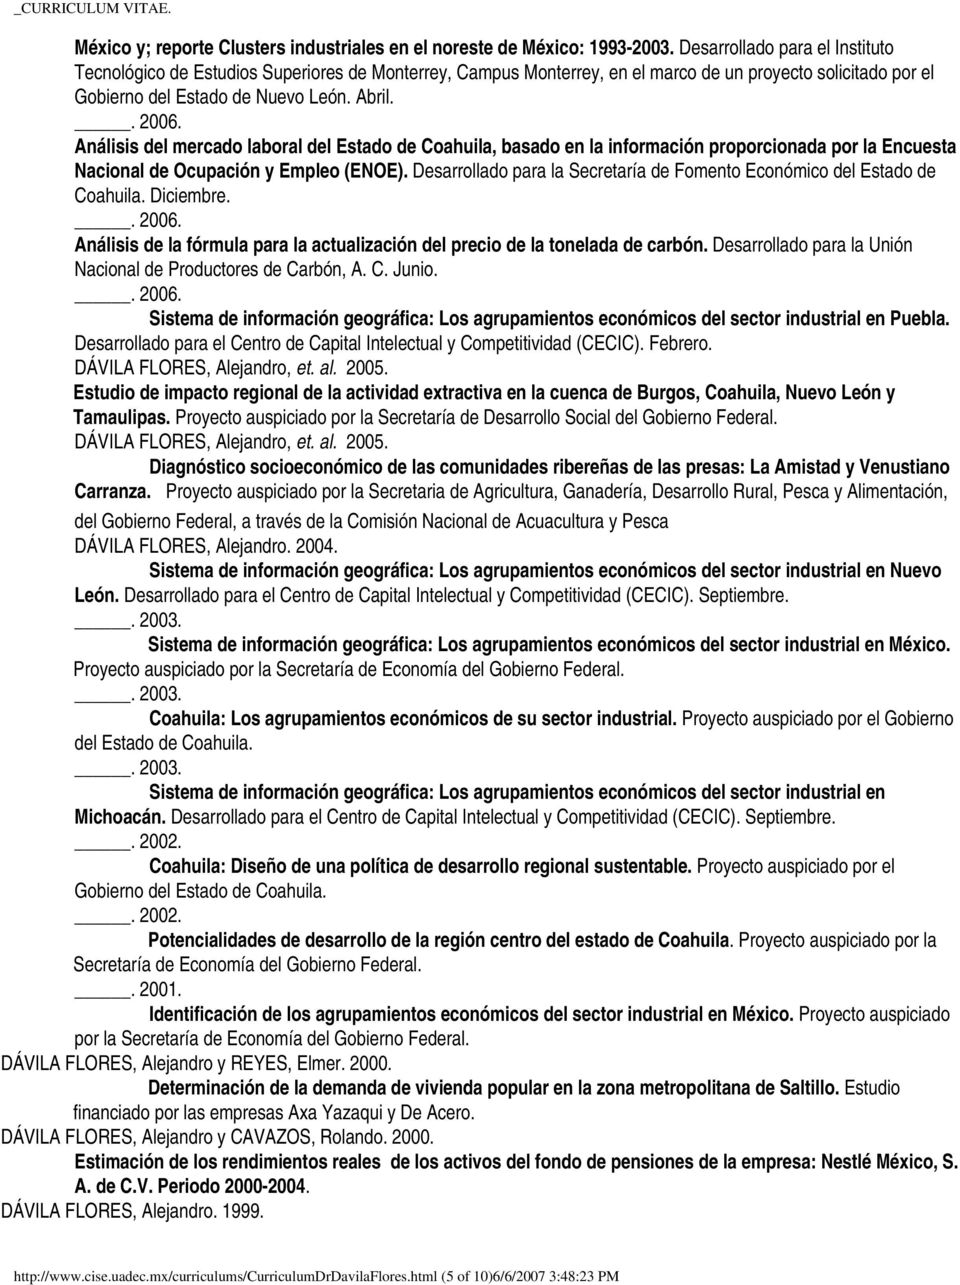 Análisis del mercado laboral del Estado de Coahuila, basado en la información proporcionada por la Encuesta Nacional de Ocupación y Empleo (ENOE).